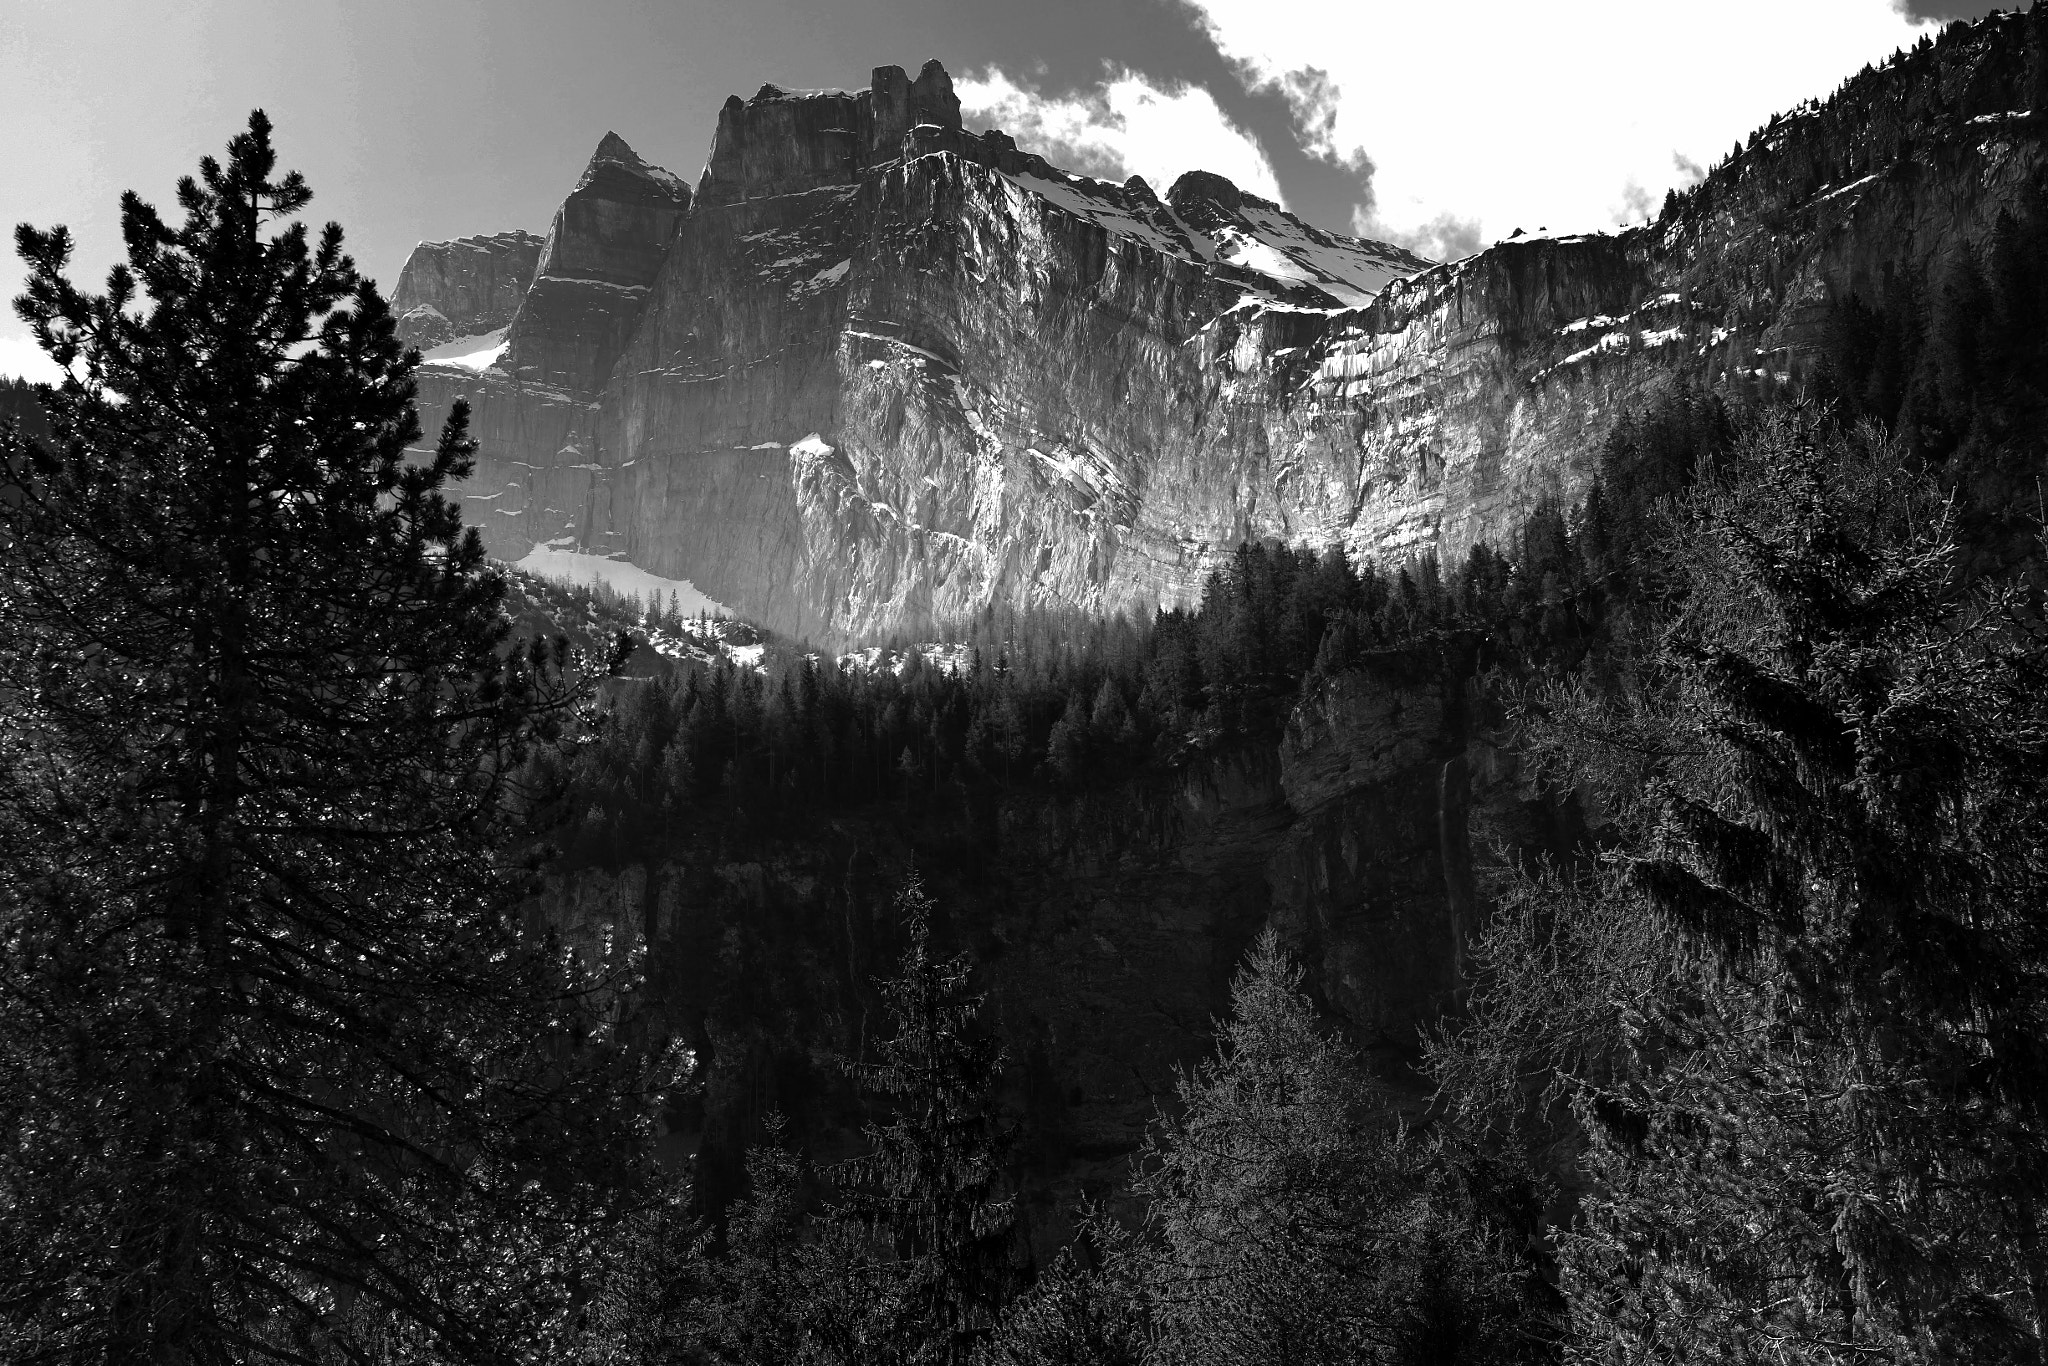 Nikon D850 + Nikon AF-S Nikkor 24-70mm F2.8E ED VR sample photo. Hiking trail above kandersteg, switzerland photography